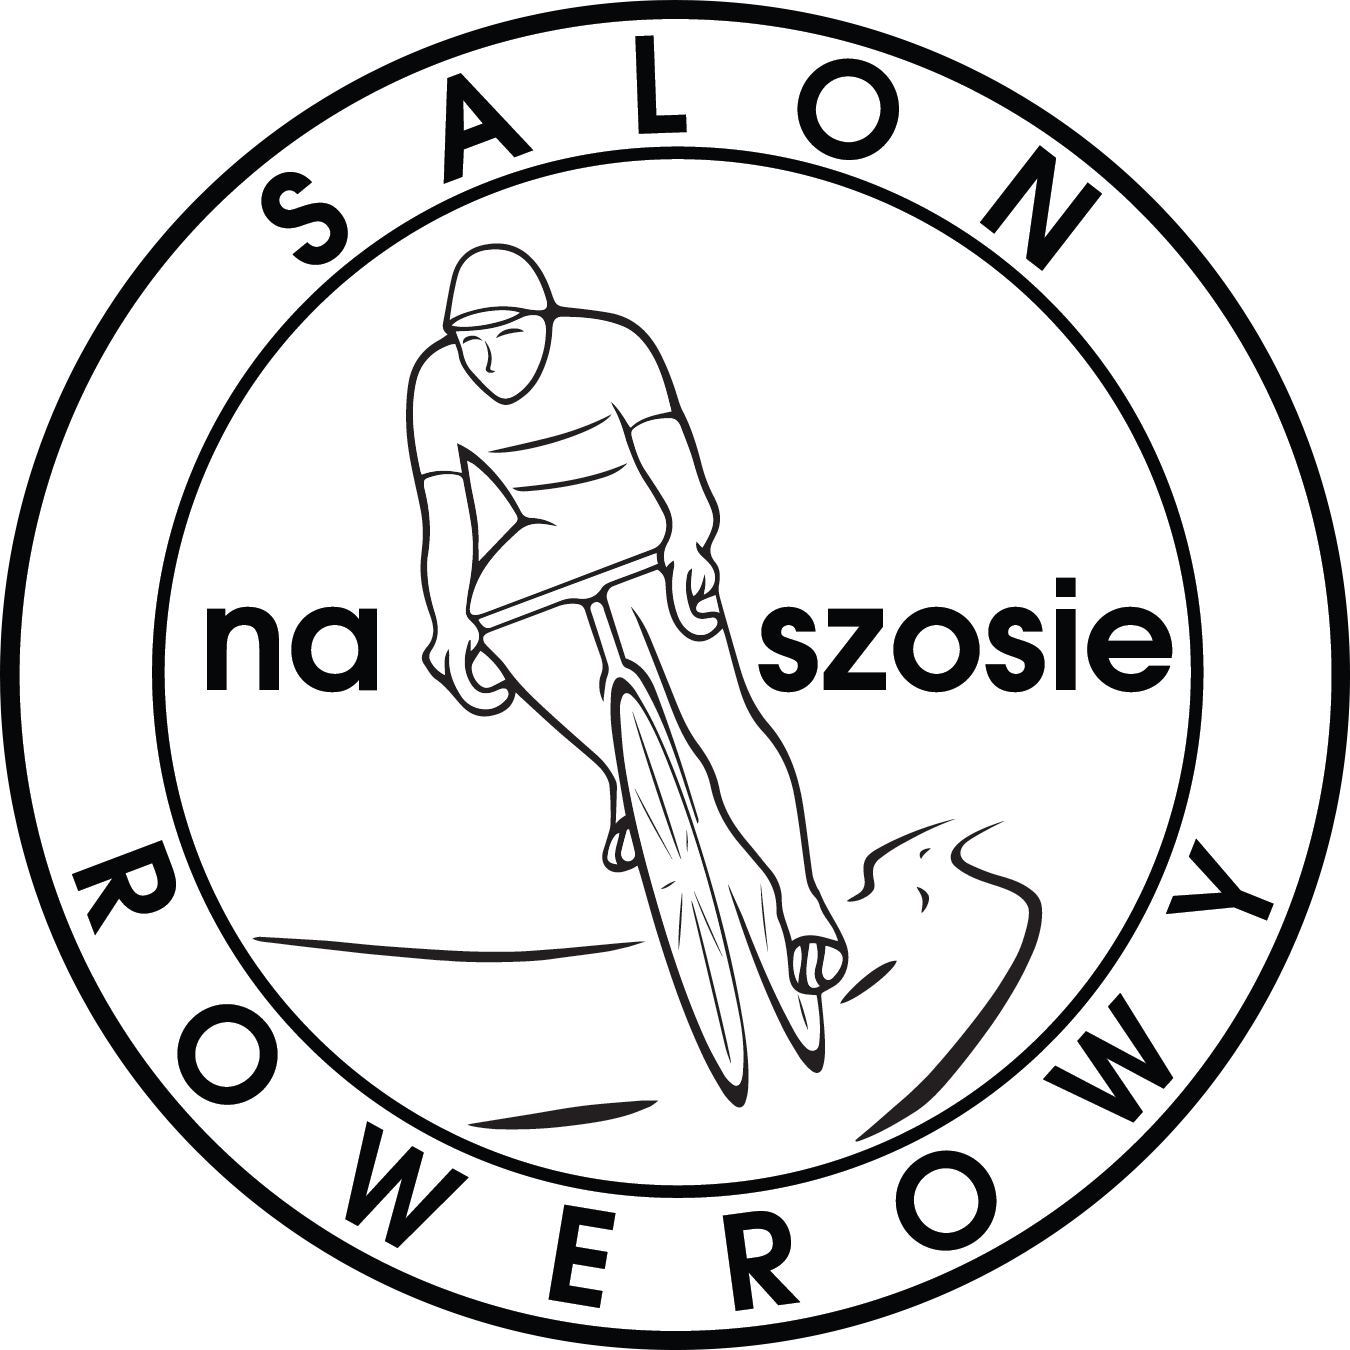 Sklep Naszosie.pl - logo